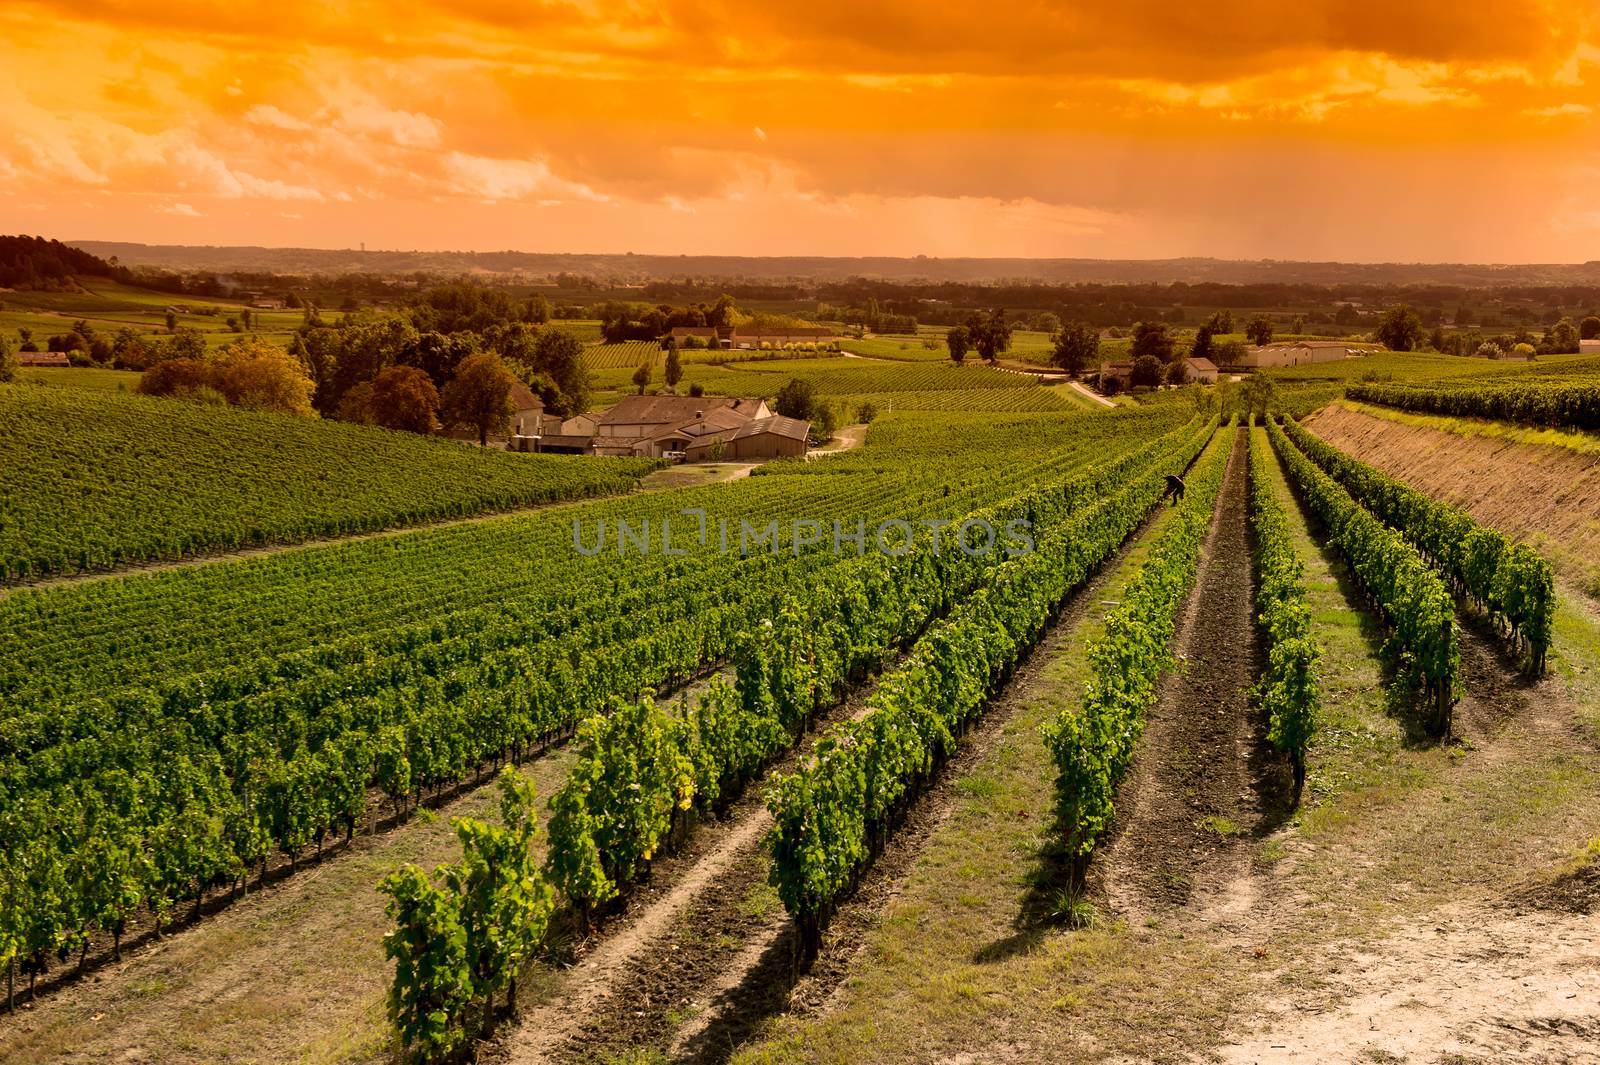 Vineyard Sunrise-Vineyards of Saint Emilion, Bordeaux Vineyards by FreeProd